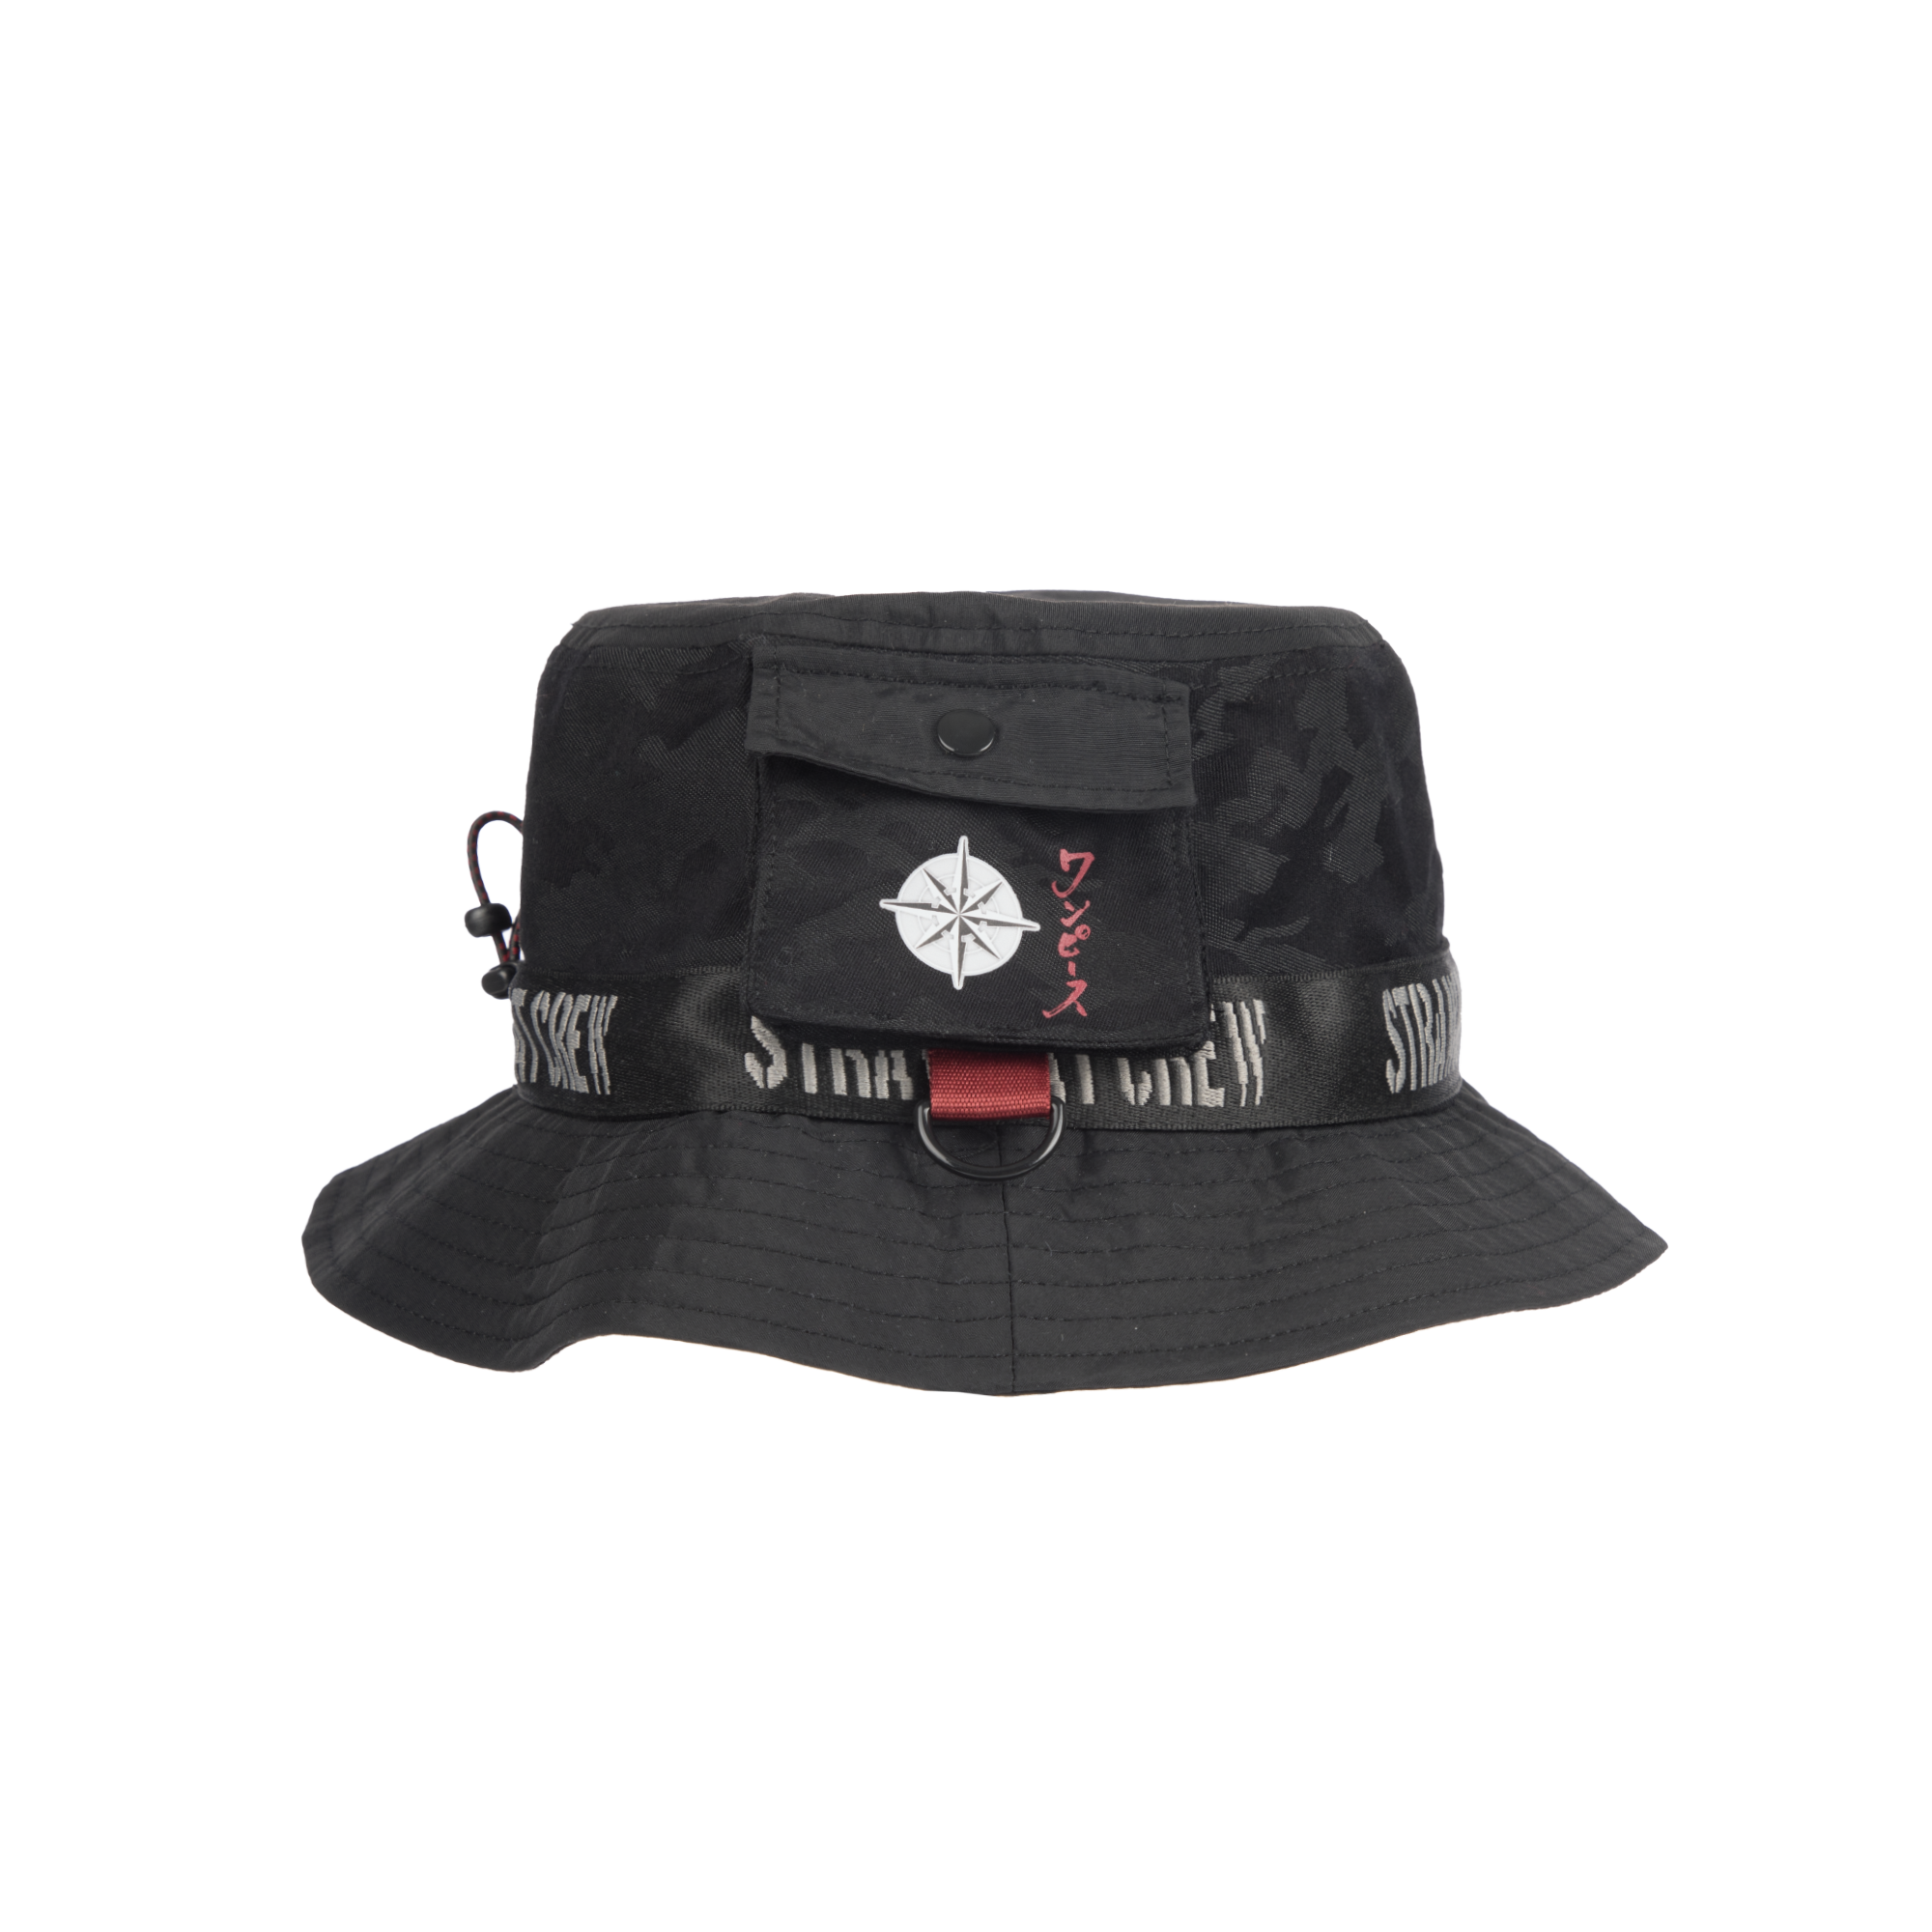 Straw Hat Crew Pocket Bucket Hat